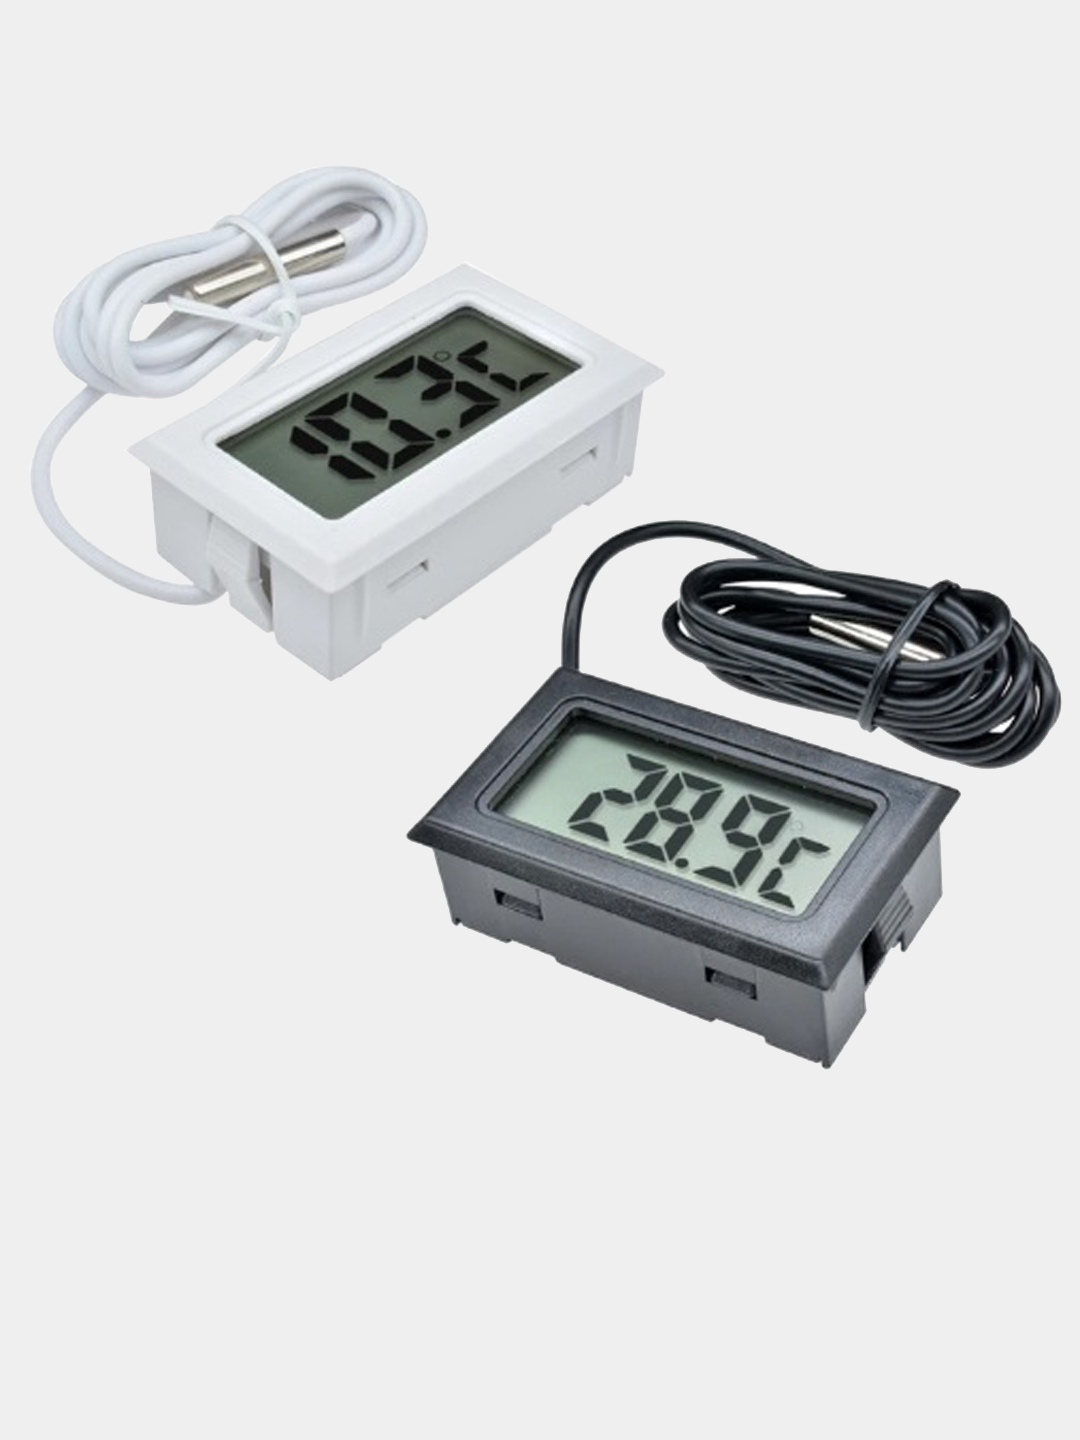 Цифровой электронный термометр с выносным датчиком, датчик температуры .